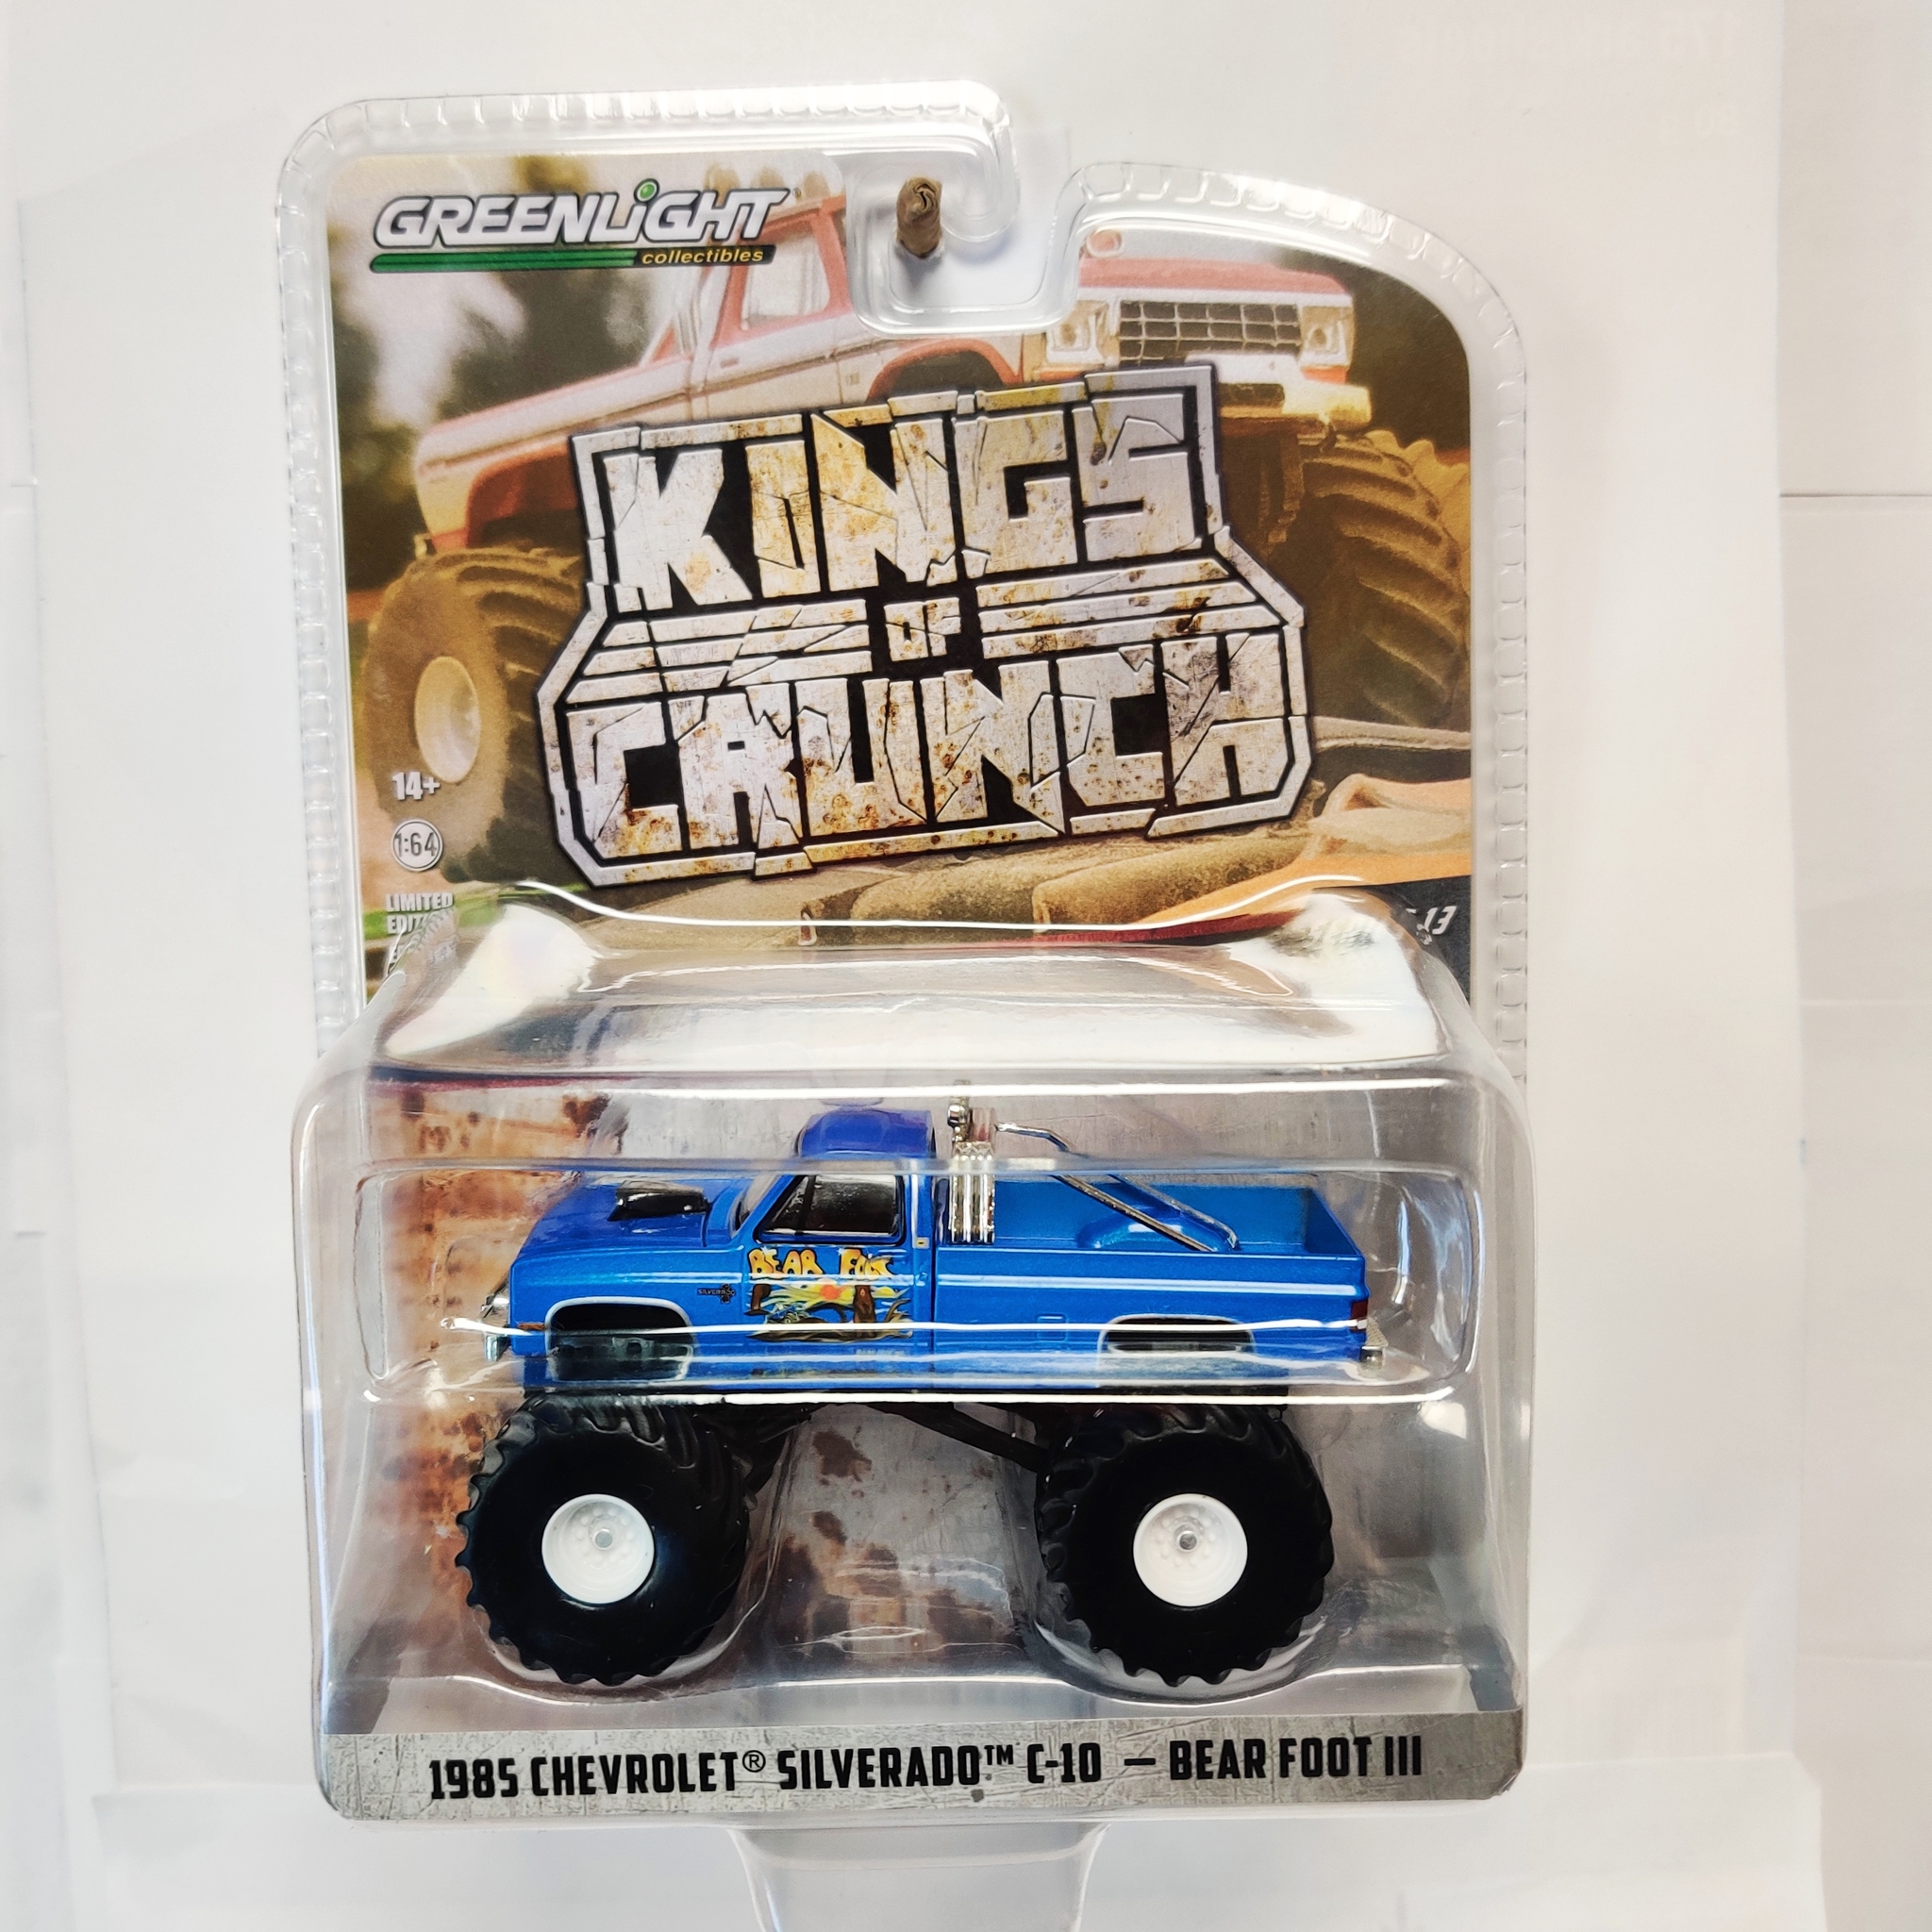 Skala 1/64 Greenlight "Kings of Crunch" 1985 Chevrolet Silverado C-10 - Bear Foot III